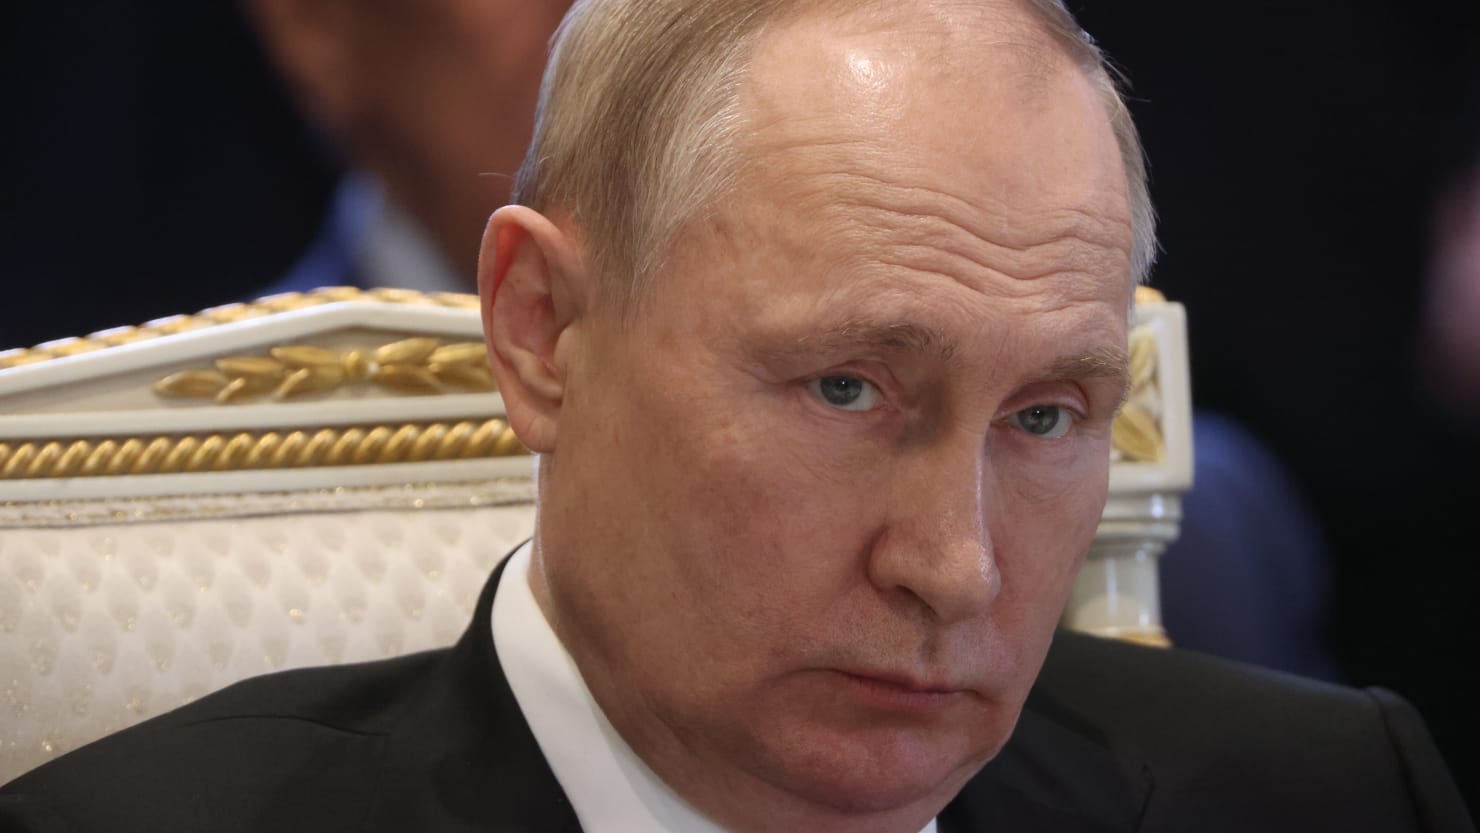 Tající cron Vladimir Putin kvůli hrozbě Krymu z Ukrajiny v ruských médiích